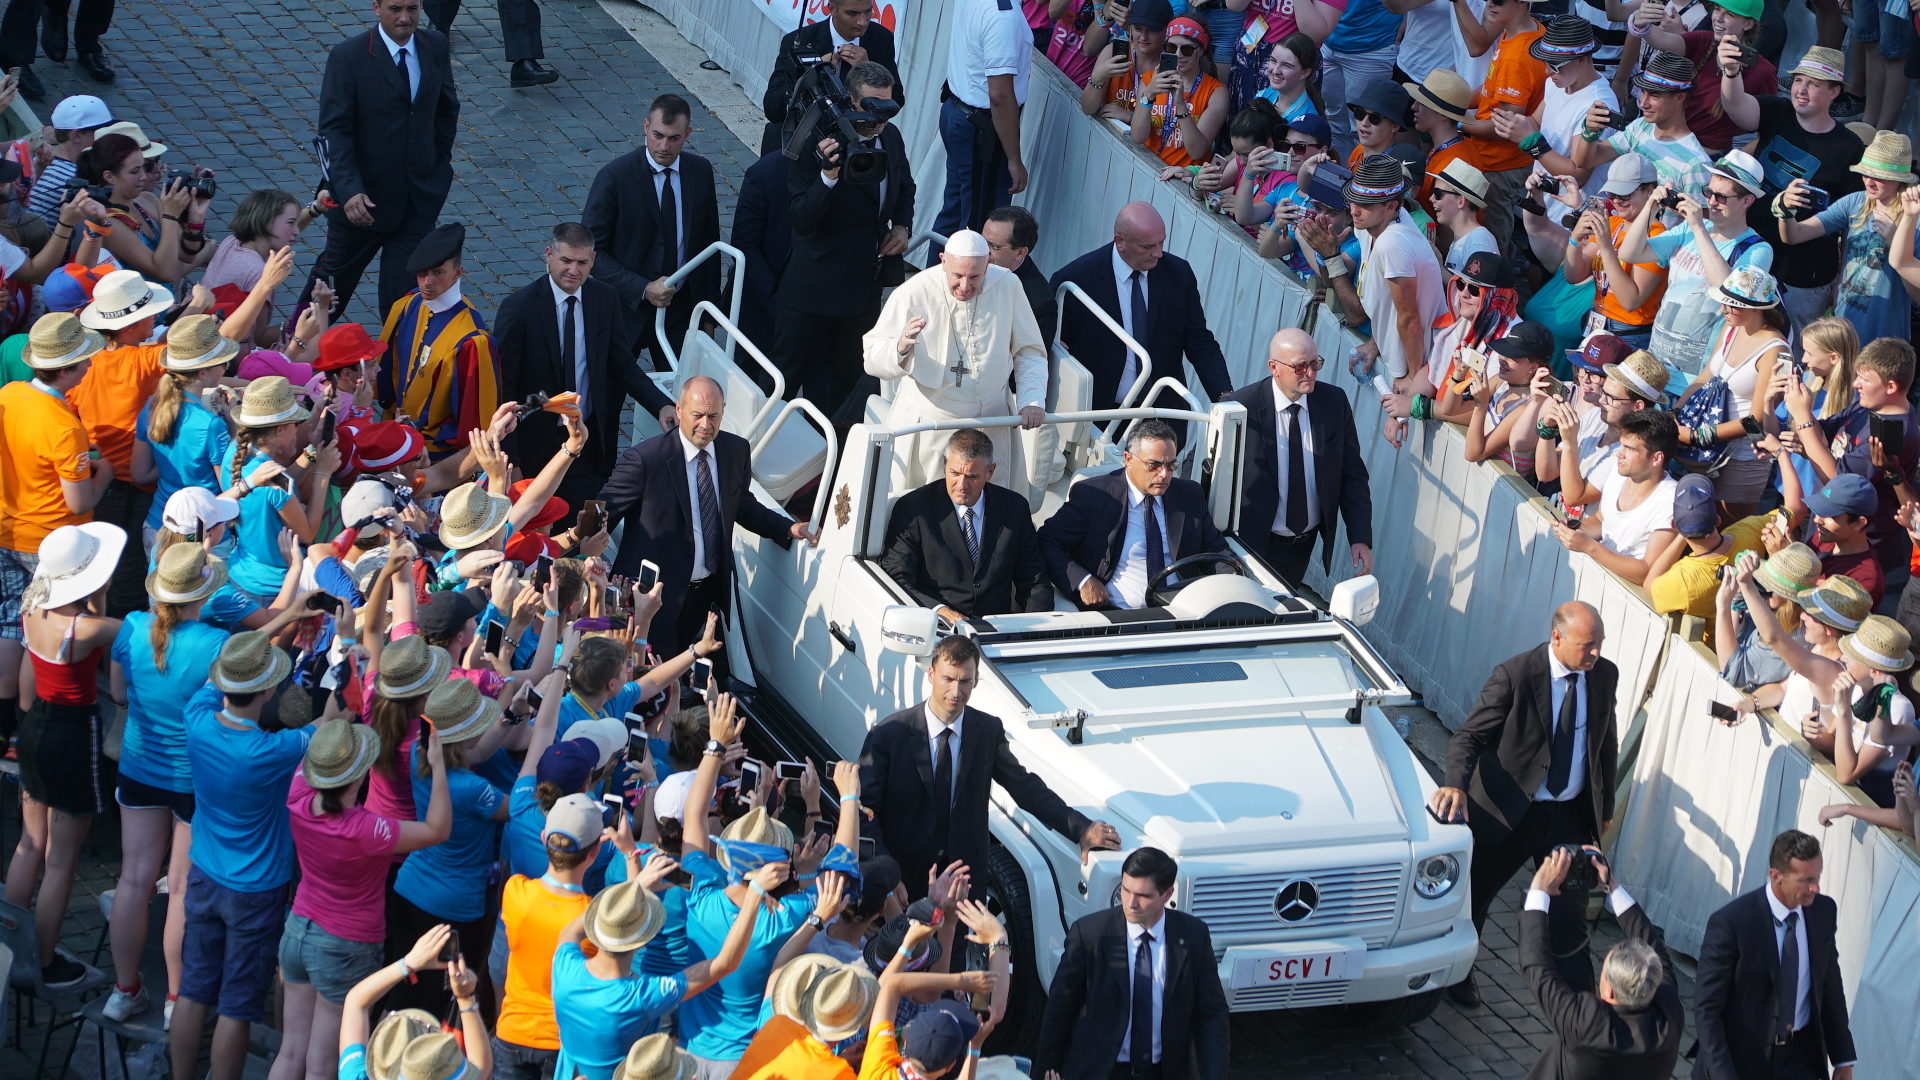 Endlich kommt der Papst!